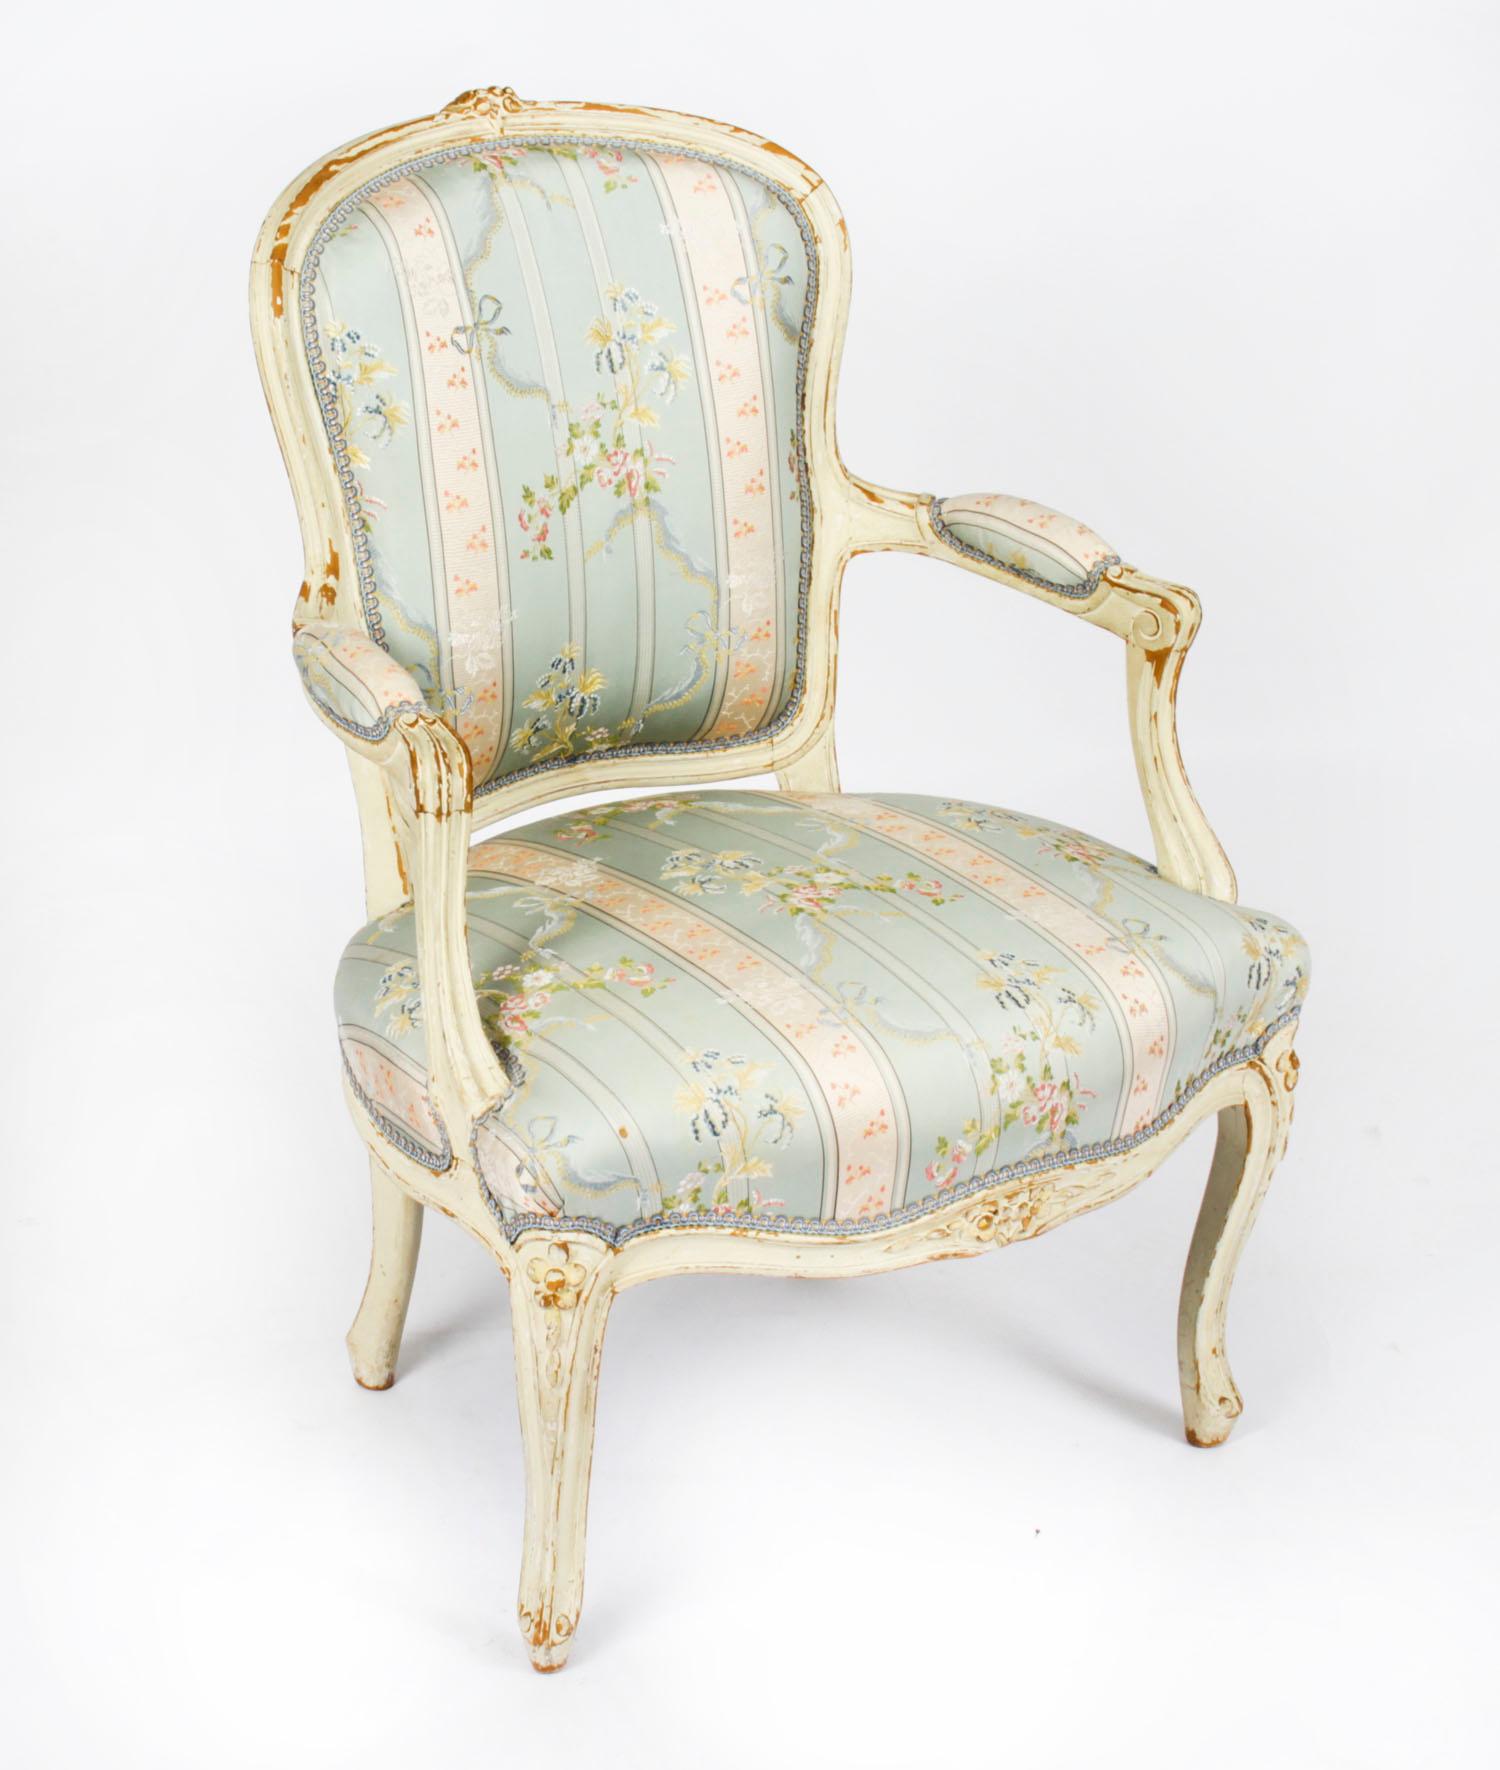 Il s'agit d'une belle paire de fauteuils anciens de style néo-louisianiste, peints en crème, datant de la fin du 19e siècle.
 
Ils sont tous dotés d'un plateau à crête fleurie et de supports à bras rembourrés en forme d'acanthe. Ils reposent sur